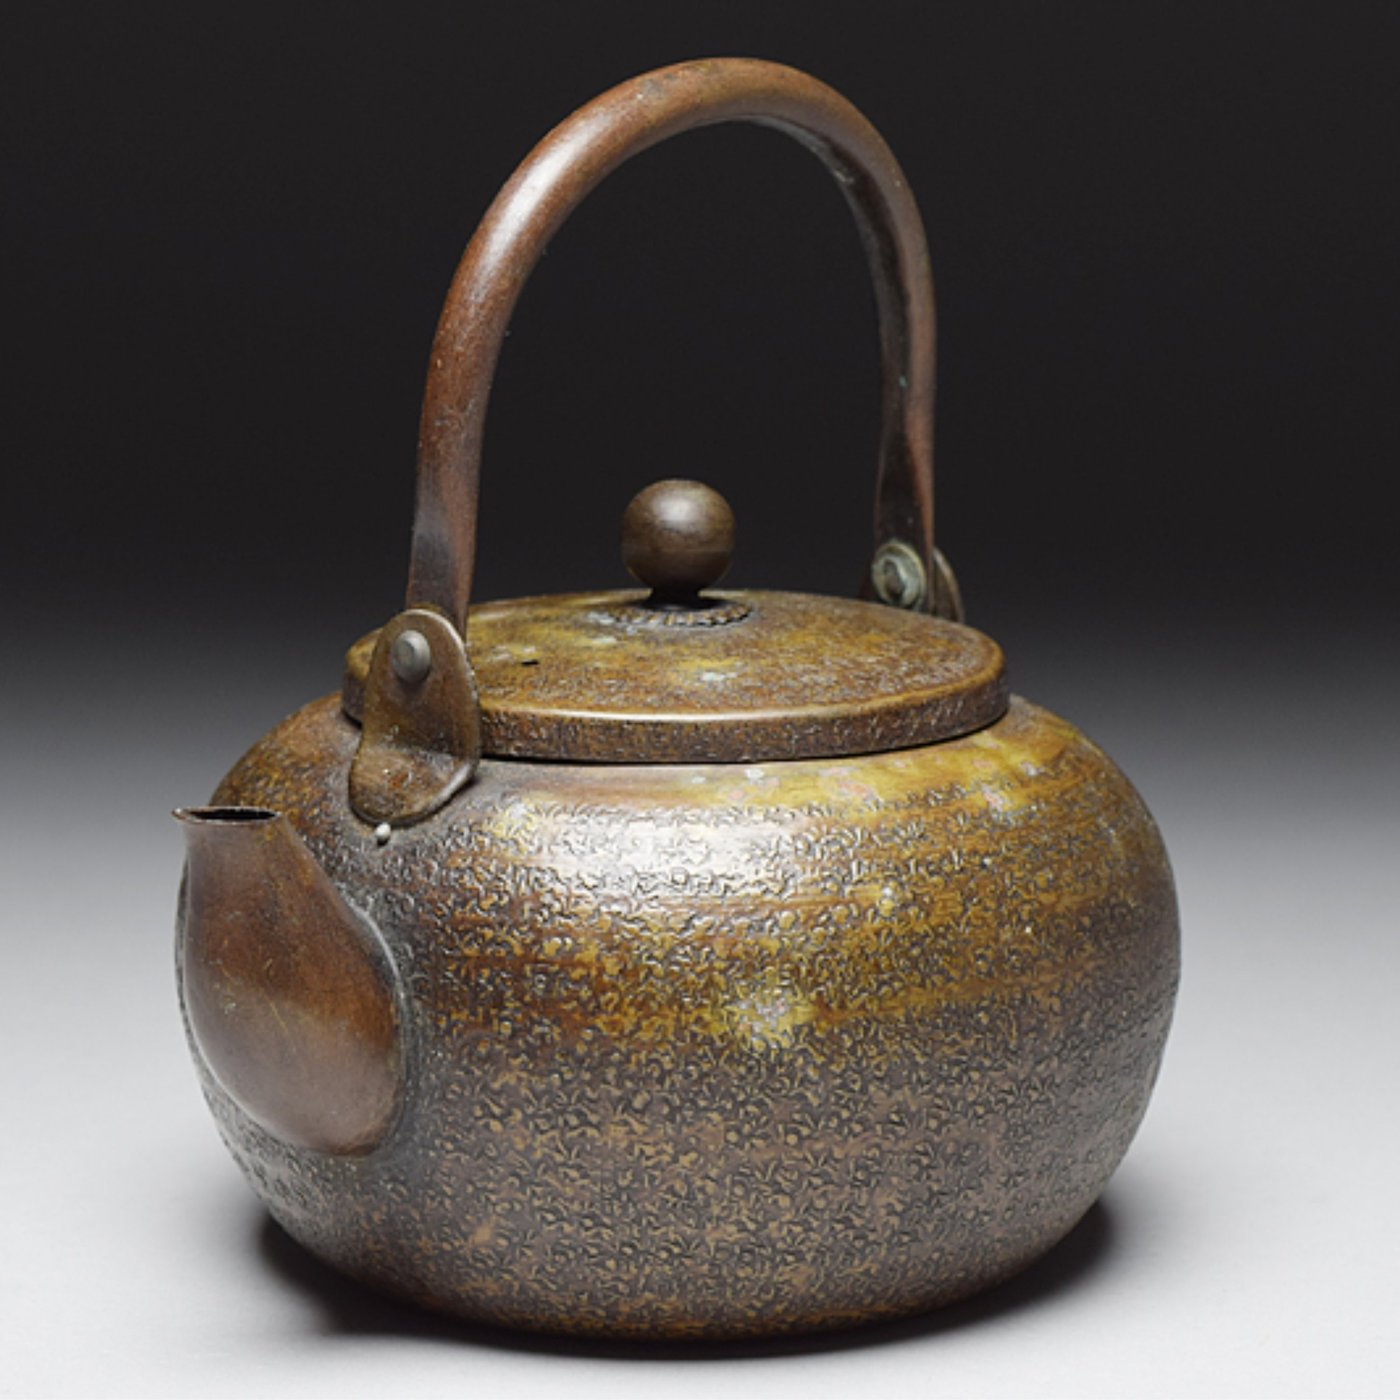 【松果坊】日本金工造早期日本銅壺古銅鎚目提梁湯沸煎茶道具銅器 